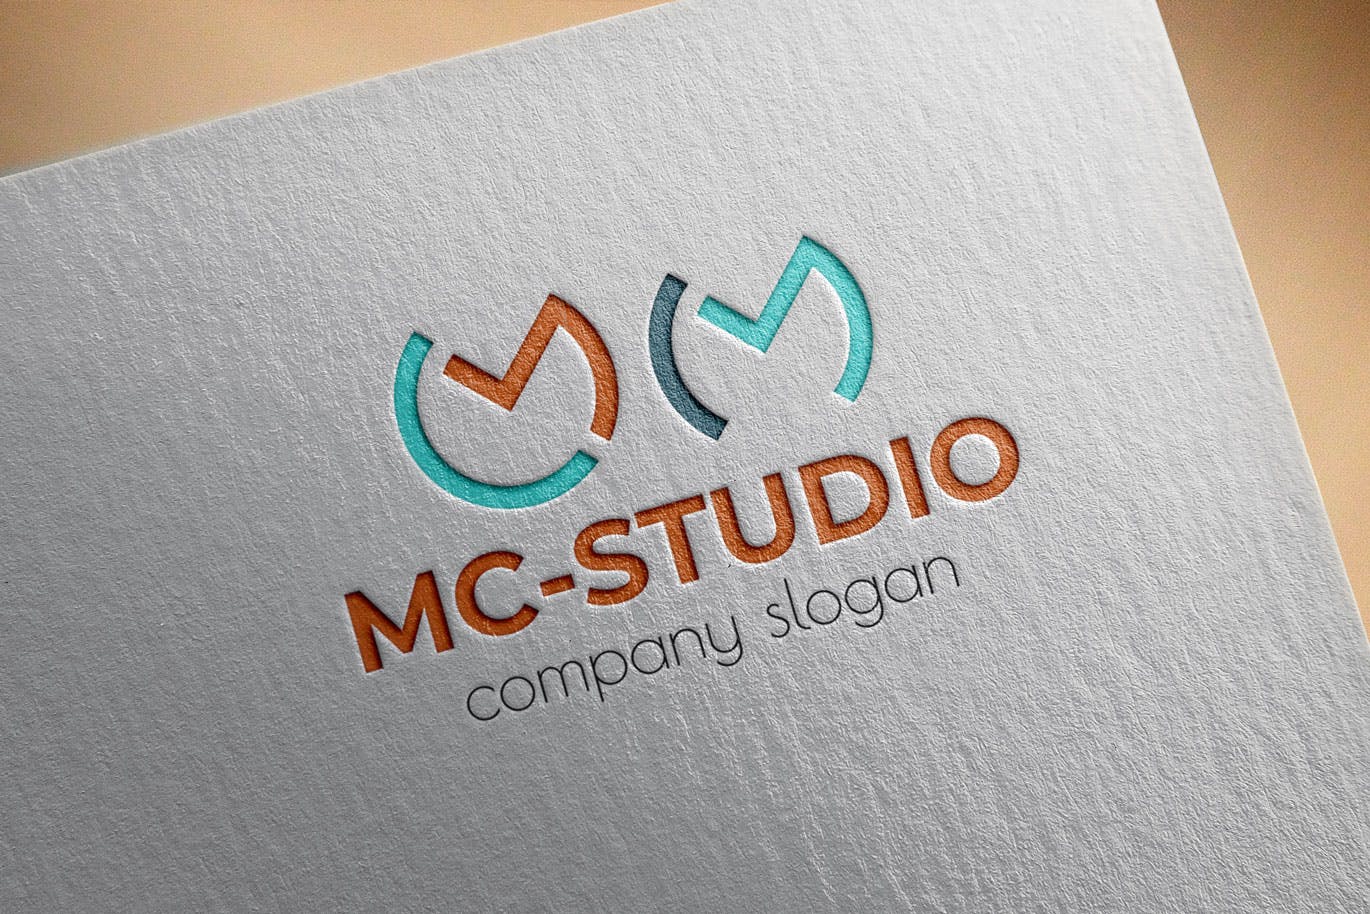 创意工作室图形Logo设计素材库精选模板 Mc Studio Creative Logo Template插图(2)